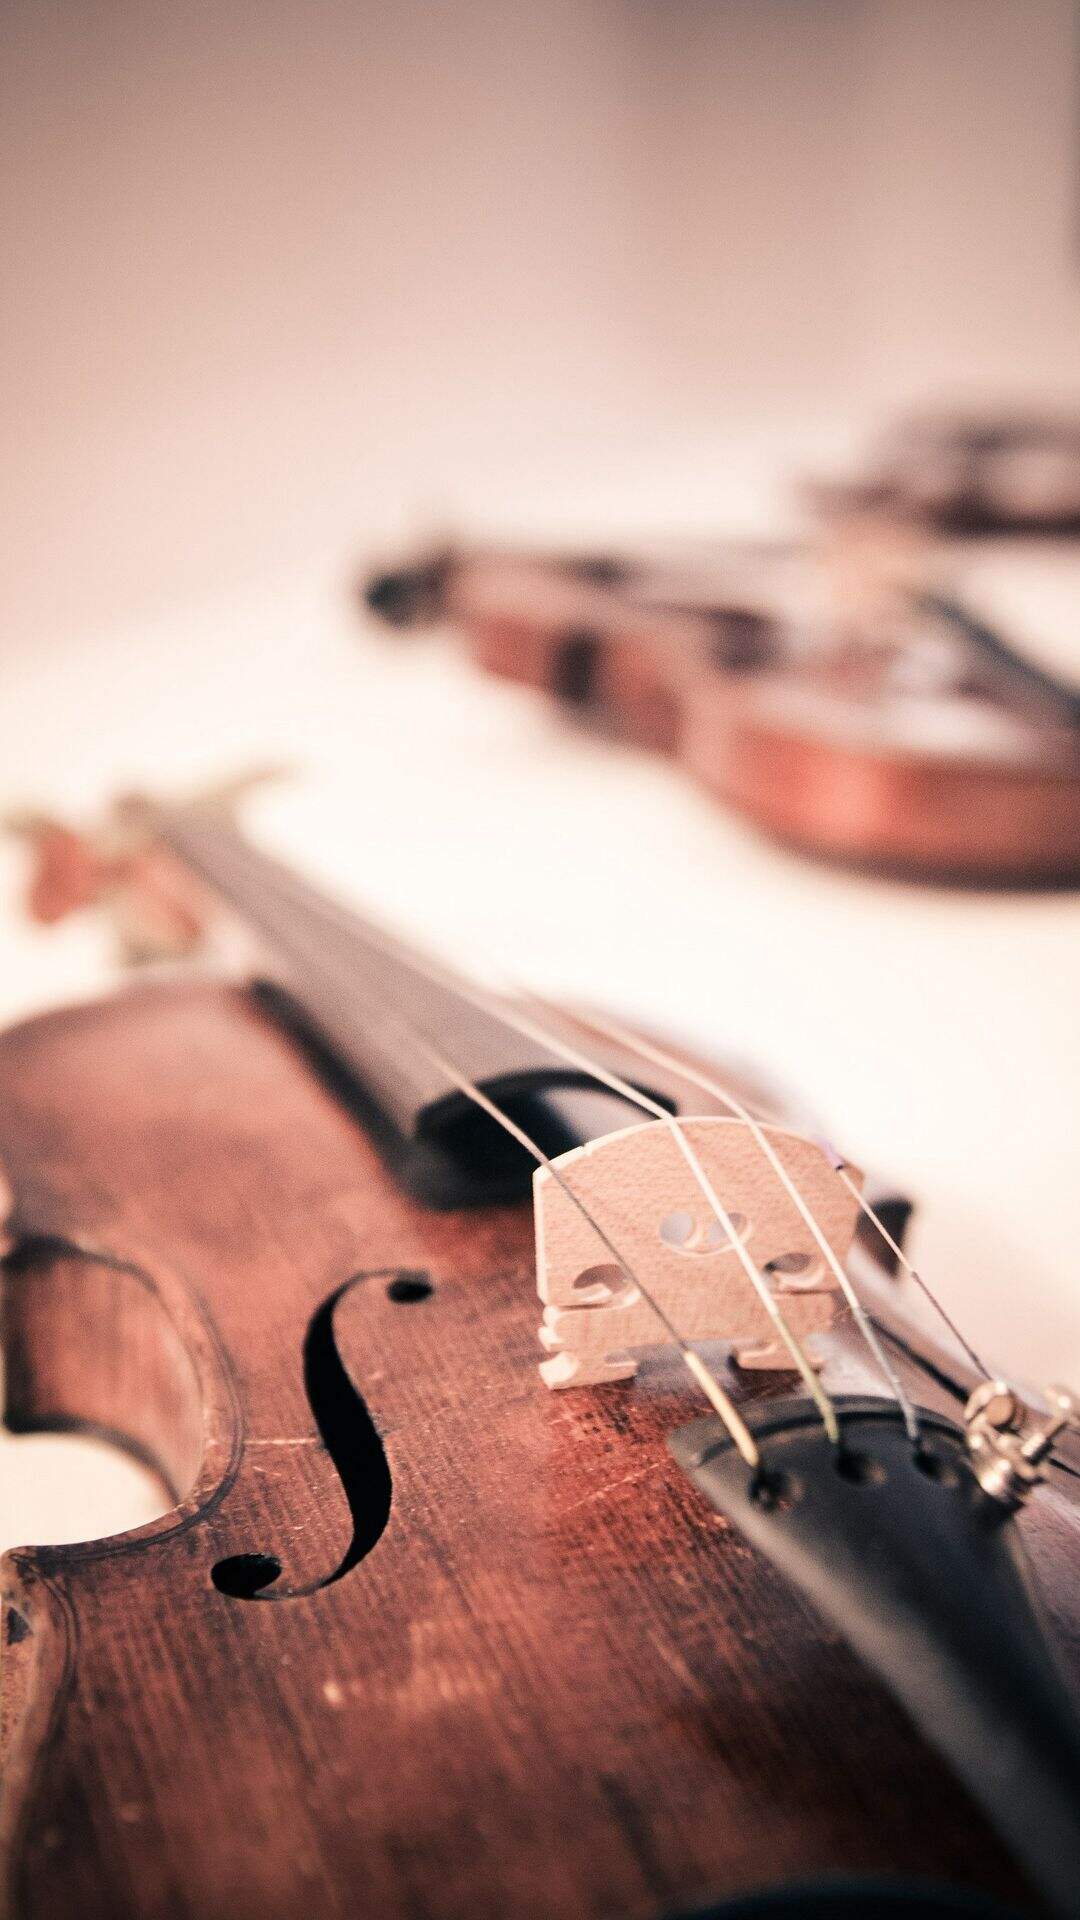 小提琴 大提琴 唯美乐器非主流手机壁纸图片第1张壁纸